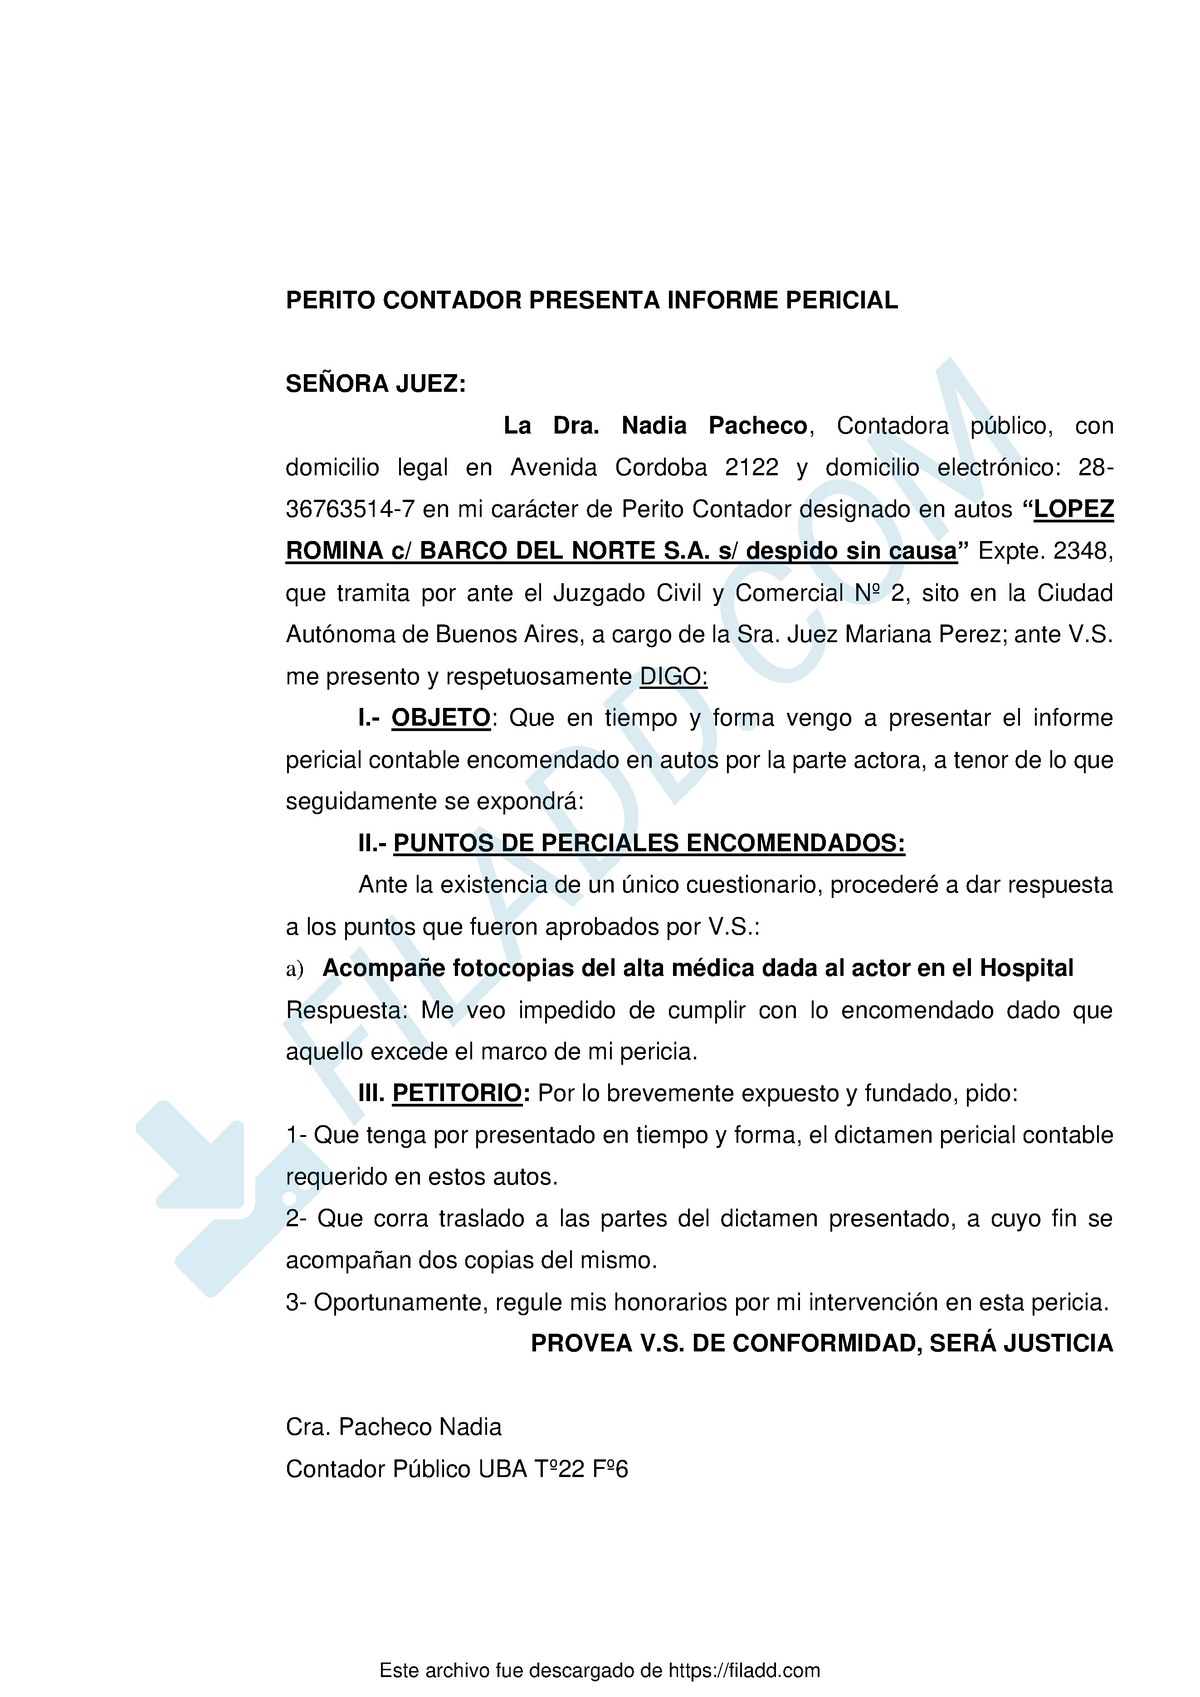 Escrito 1 - Perito Contador Presenta Informe Pericial - PERITO CONTADOR  PRESENTA INFORME PERICIAL - Studocu